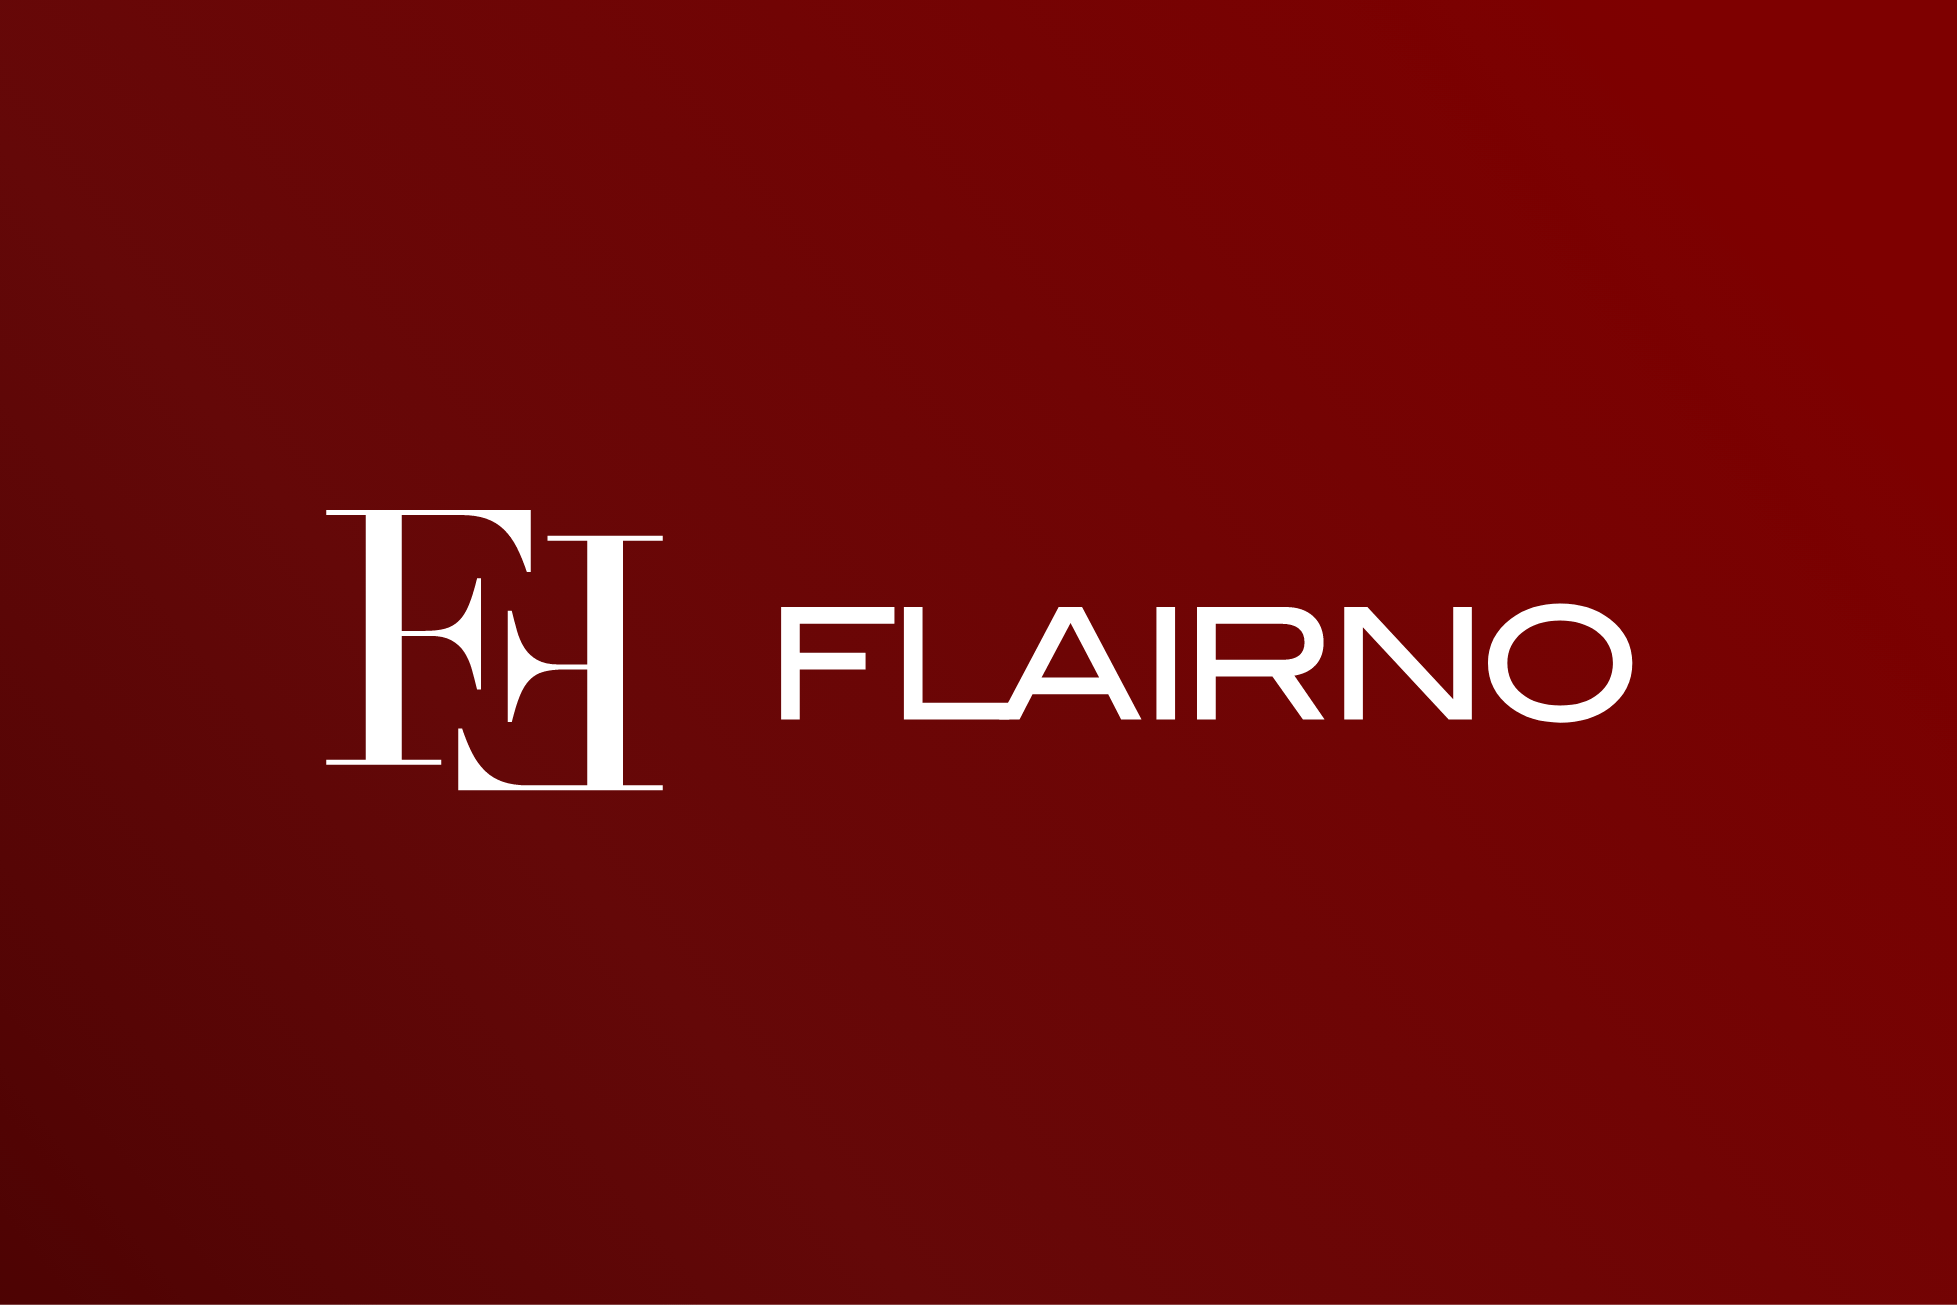 FLAIRNOは、なぜメンズコスメなのか